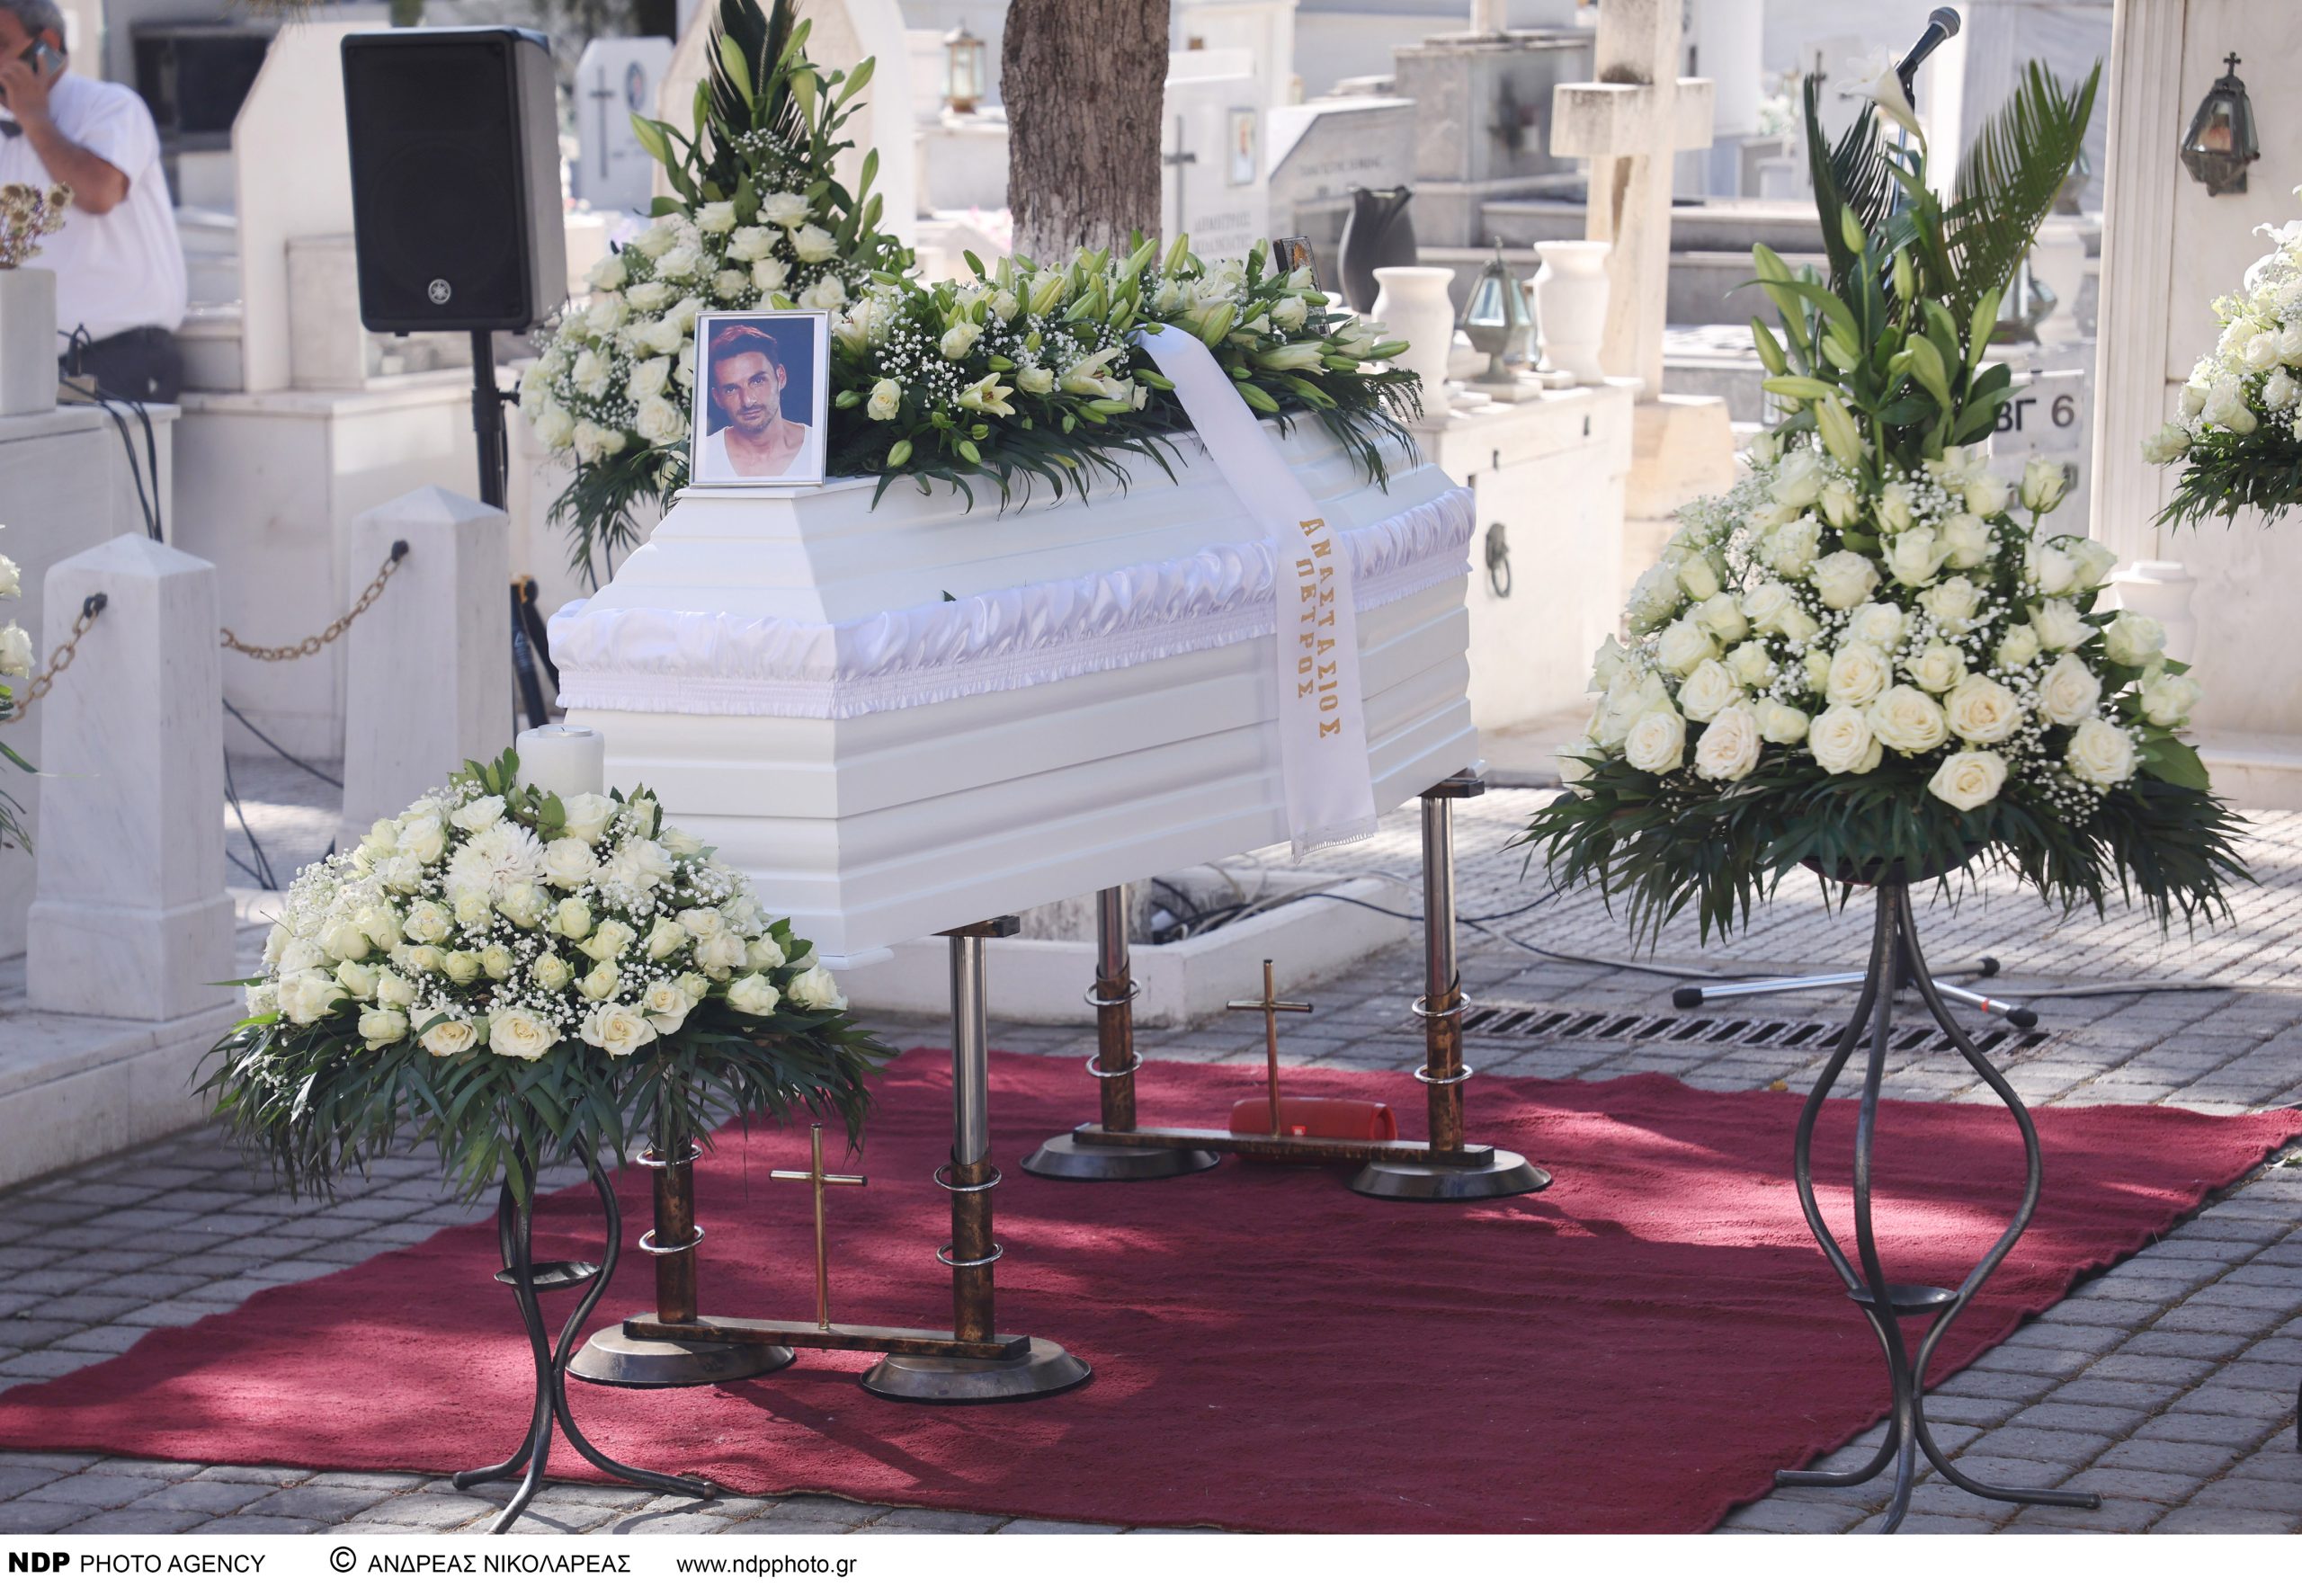 Αλέξανδρος Κομπόγιωργας: Πραγματοποιήθηκε η πολιτική κηδεία του ηθοποιού – Ποιοι έδωσαν το παρών